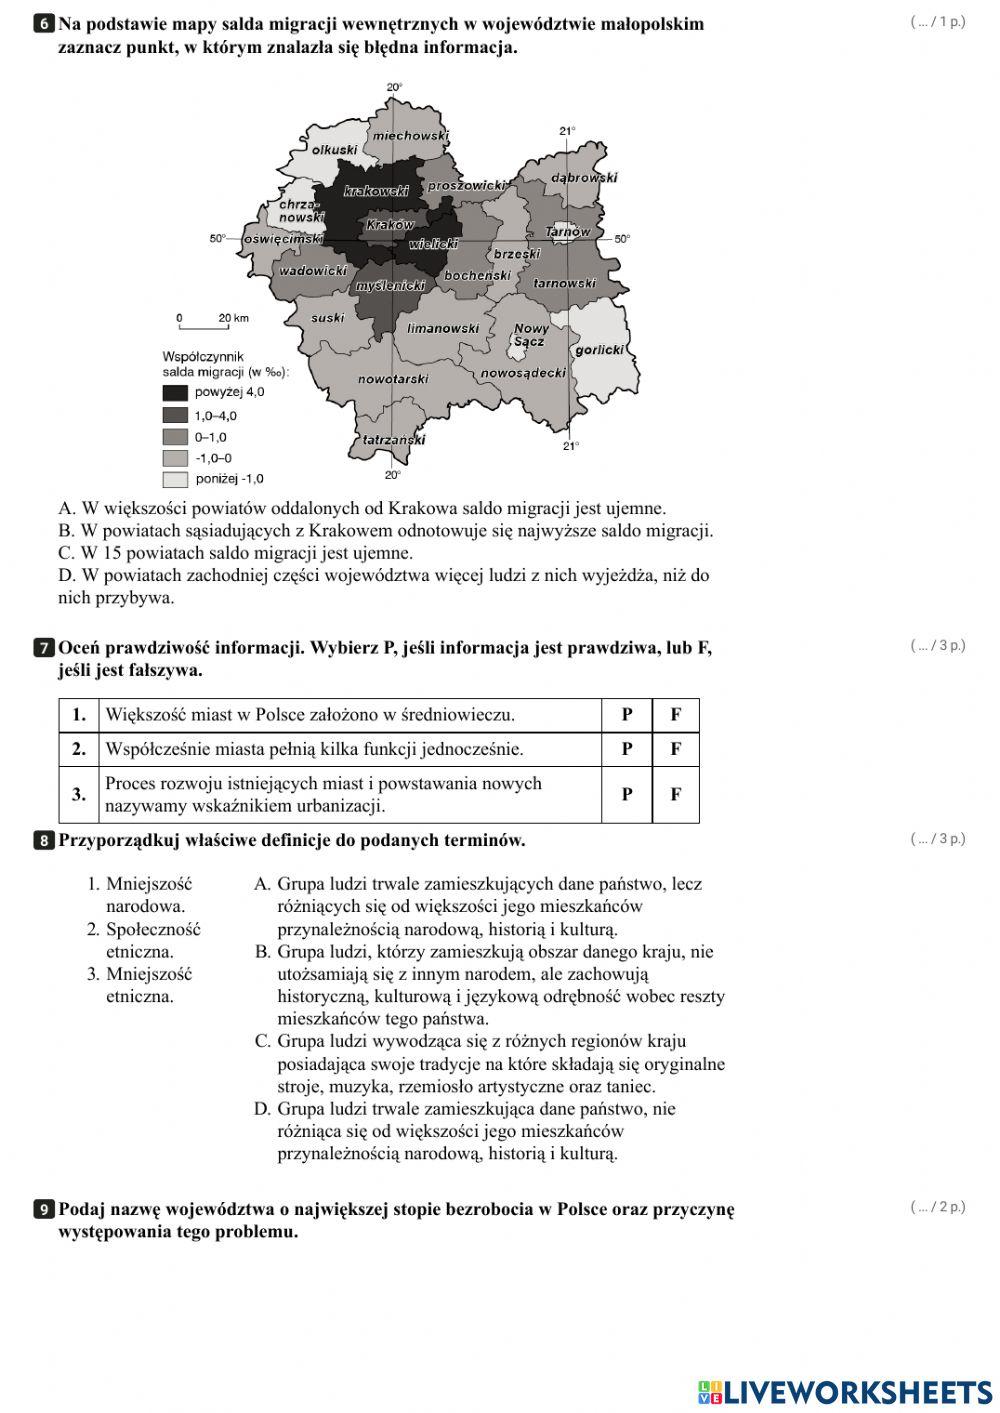 Ludność i procesy demograficzne w Polsce